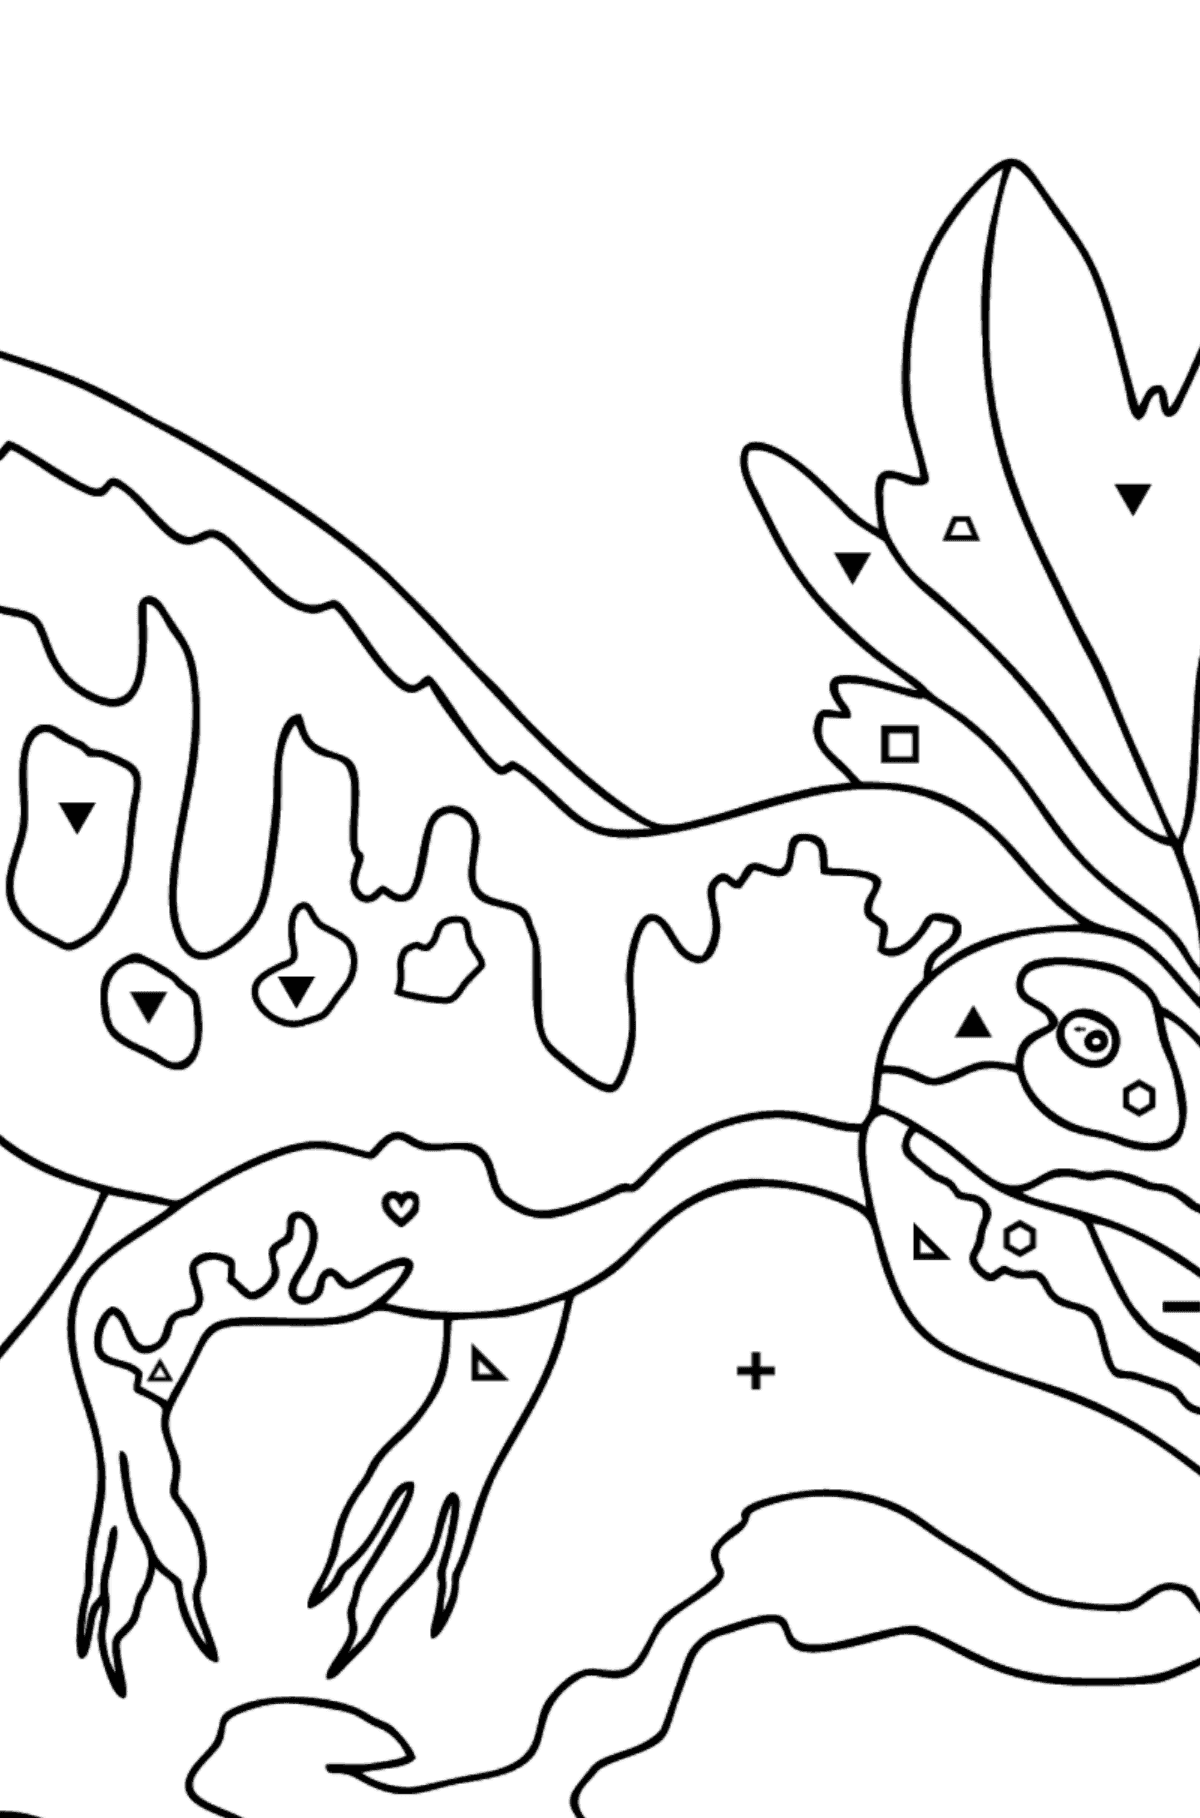 Desenho para colorir Allosaurus (difícil) - Colorir por Símbolos para Crianças